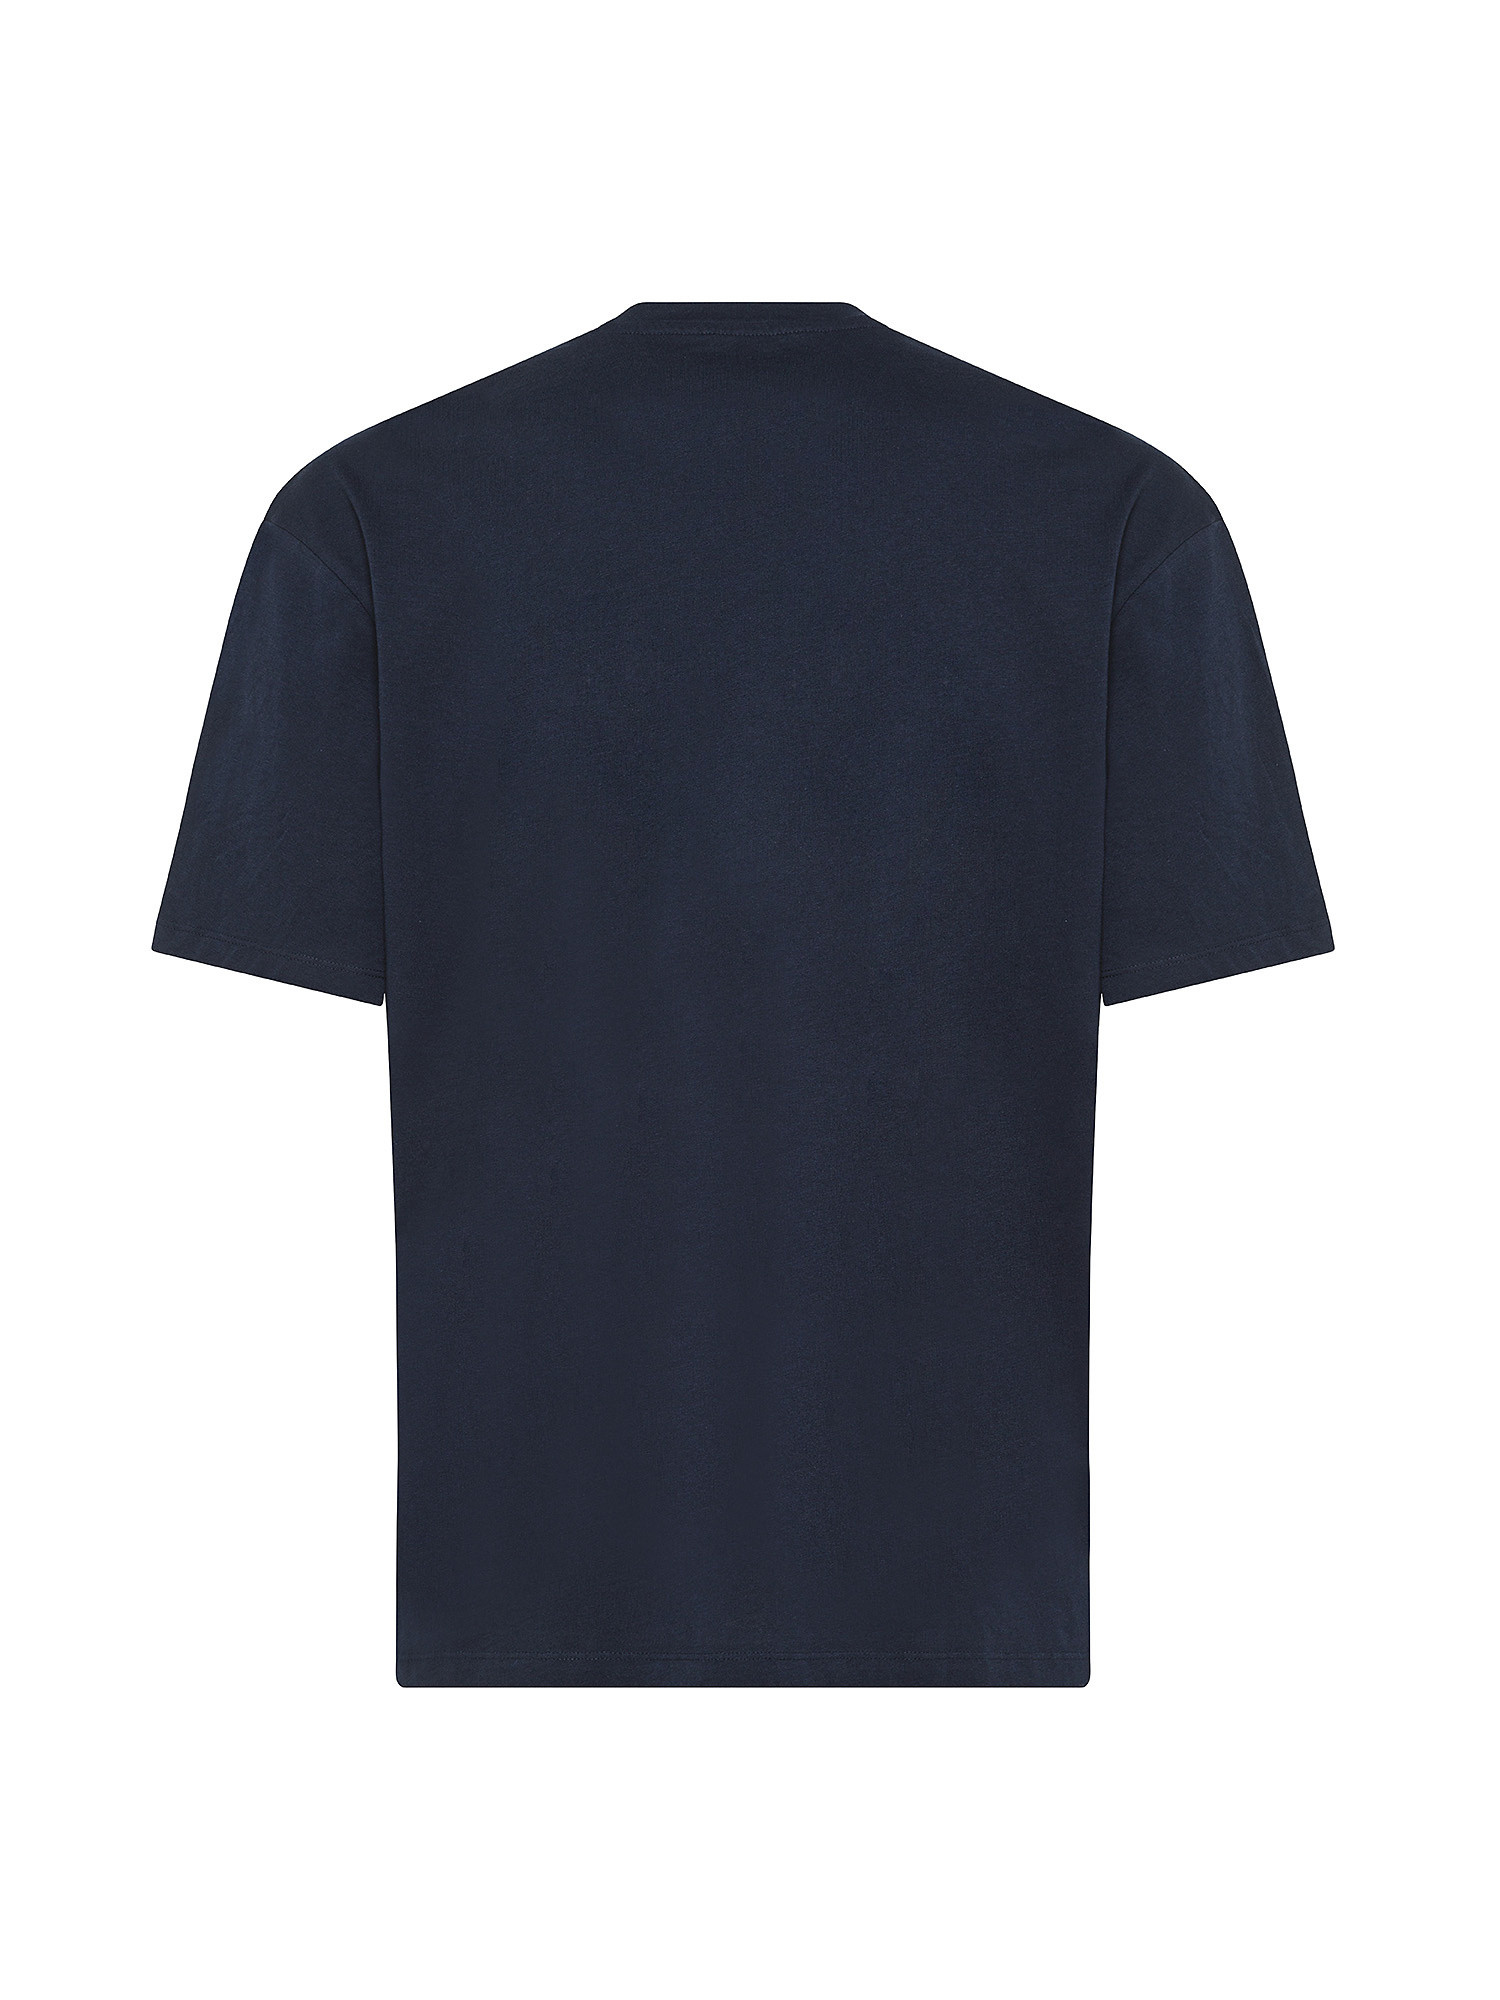 Jack & Jones - Regular fit T-shirt with print, Blue, large image number 1